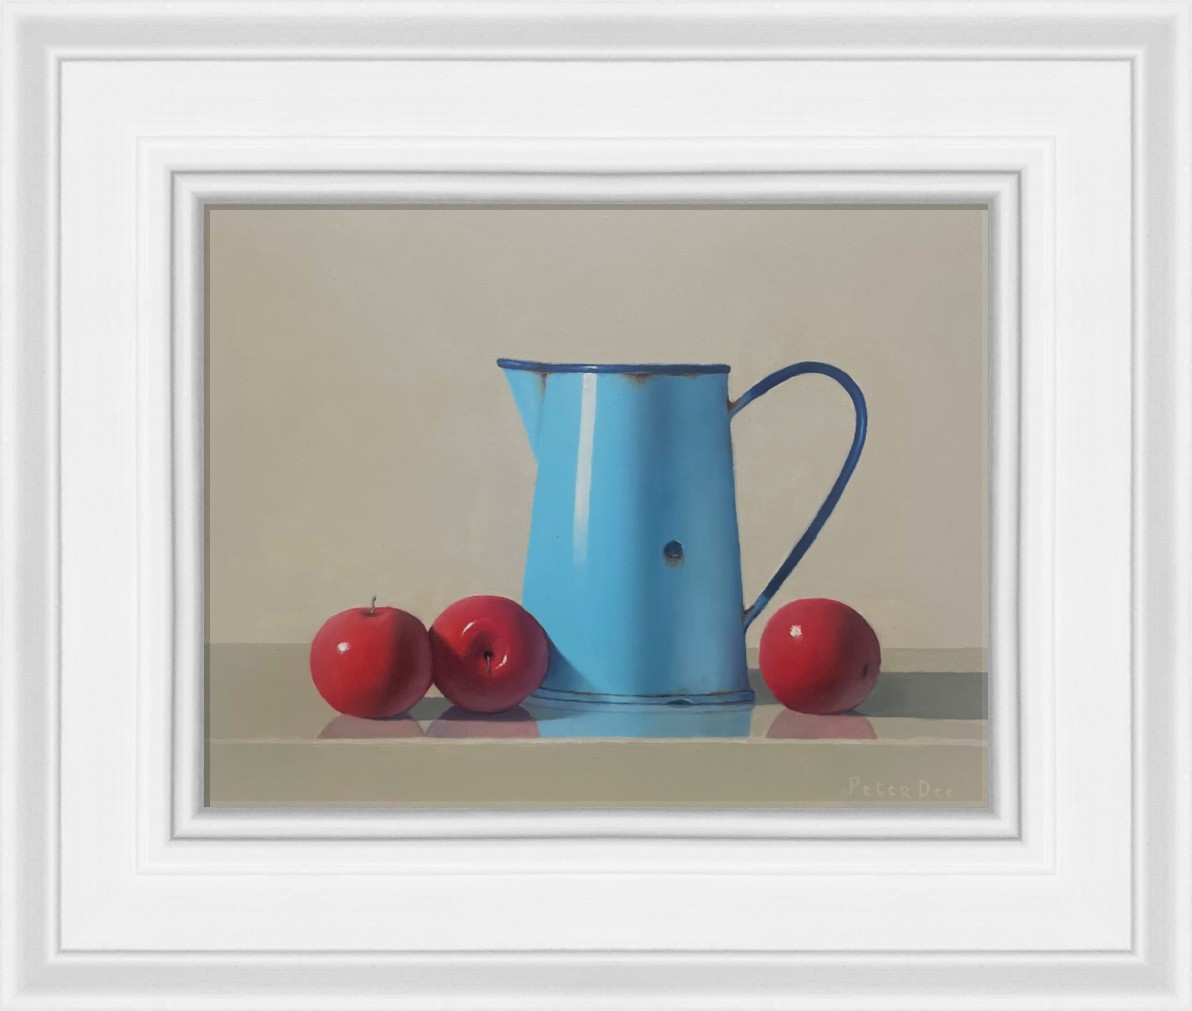  Blue Enamelware Jug with Red Apples  by Peter Dee